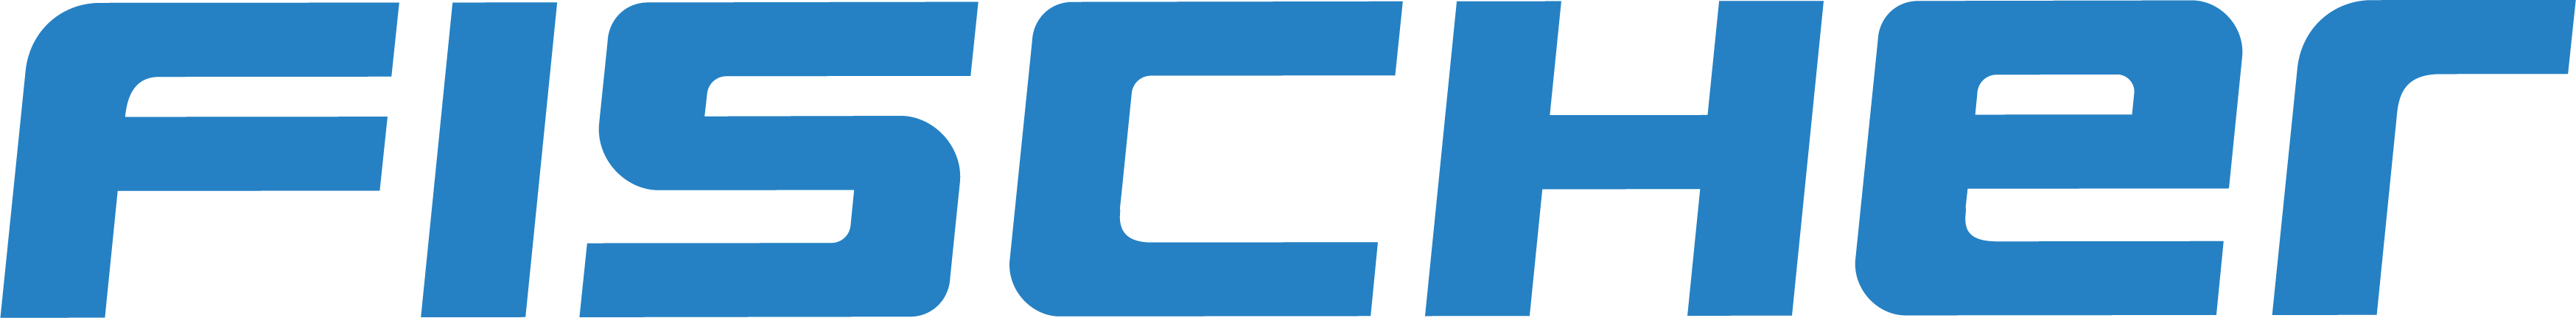 FISCHER Fahrradshop Logo